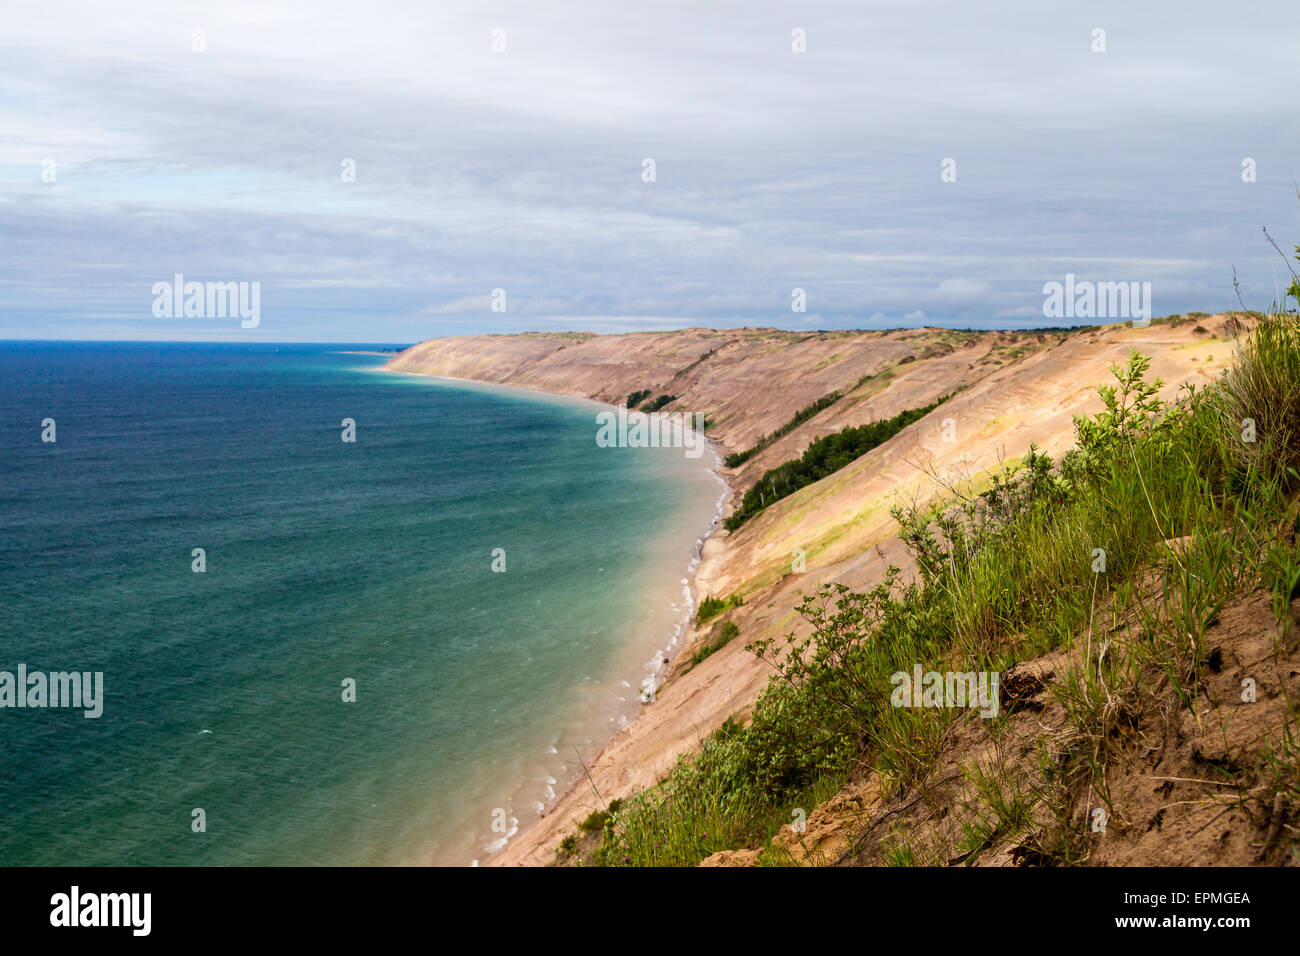 Les dunes de sable de Sable comme vu de la Log Slide donnent sur de Pictured Rocks National Lakeshore à Munising, au Michigan. Banque D'Images